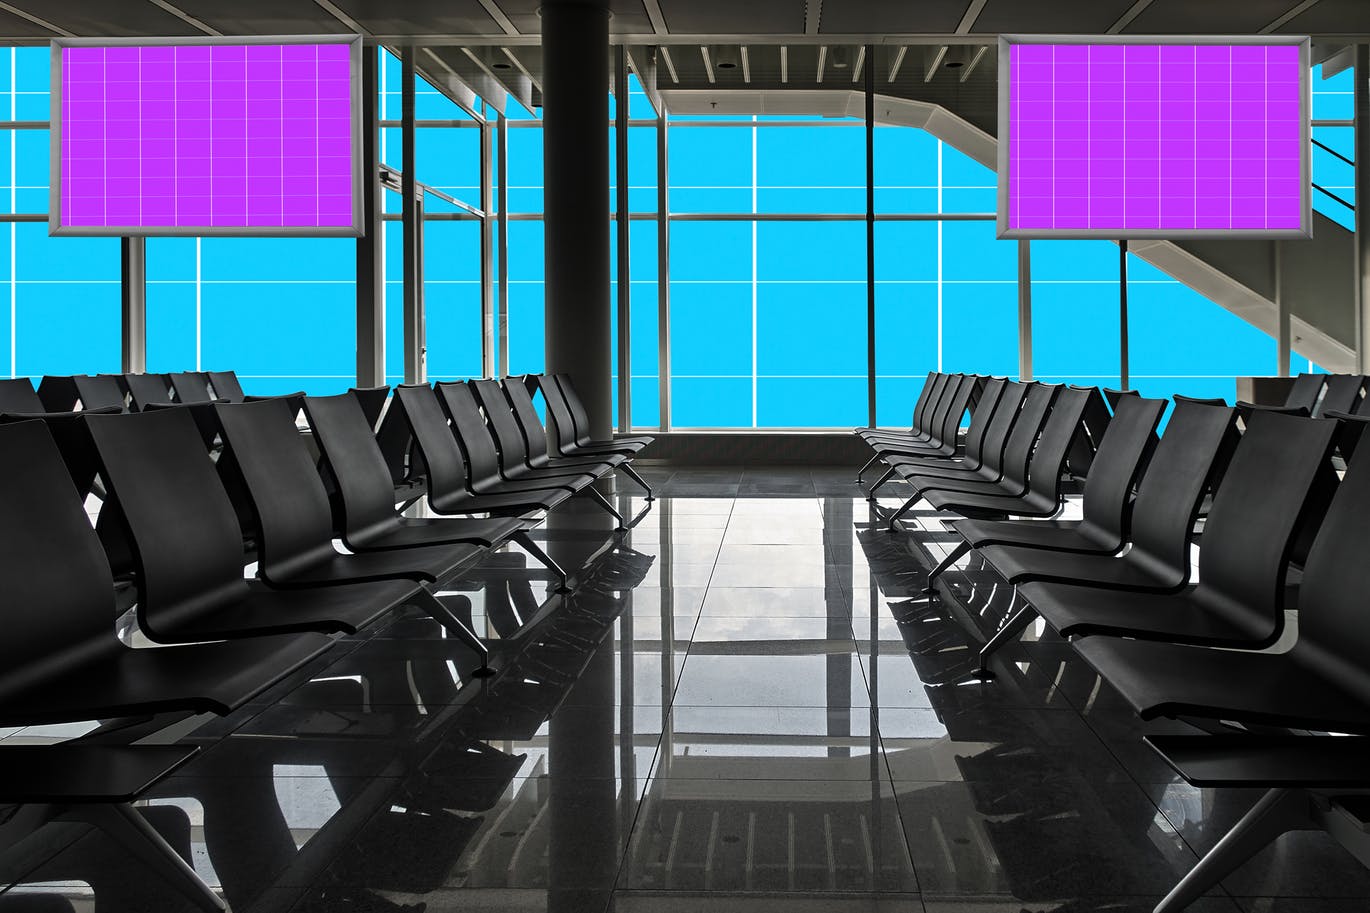 机场航站楼电视屏幕广告设计效果图样机素材库精选v01 Airport_Terminal-01插图